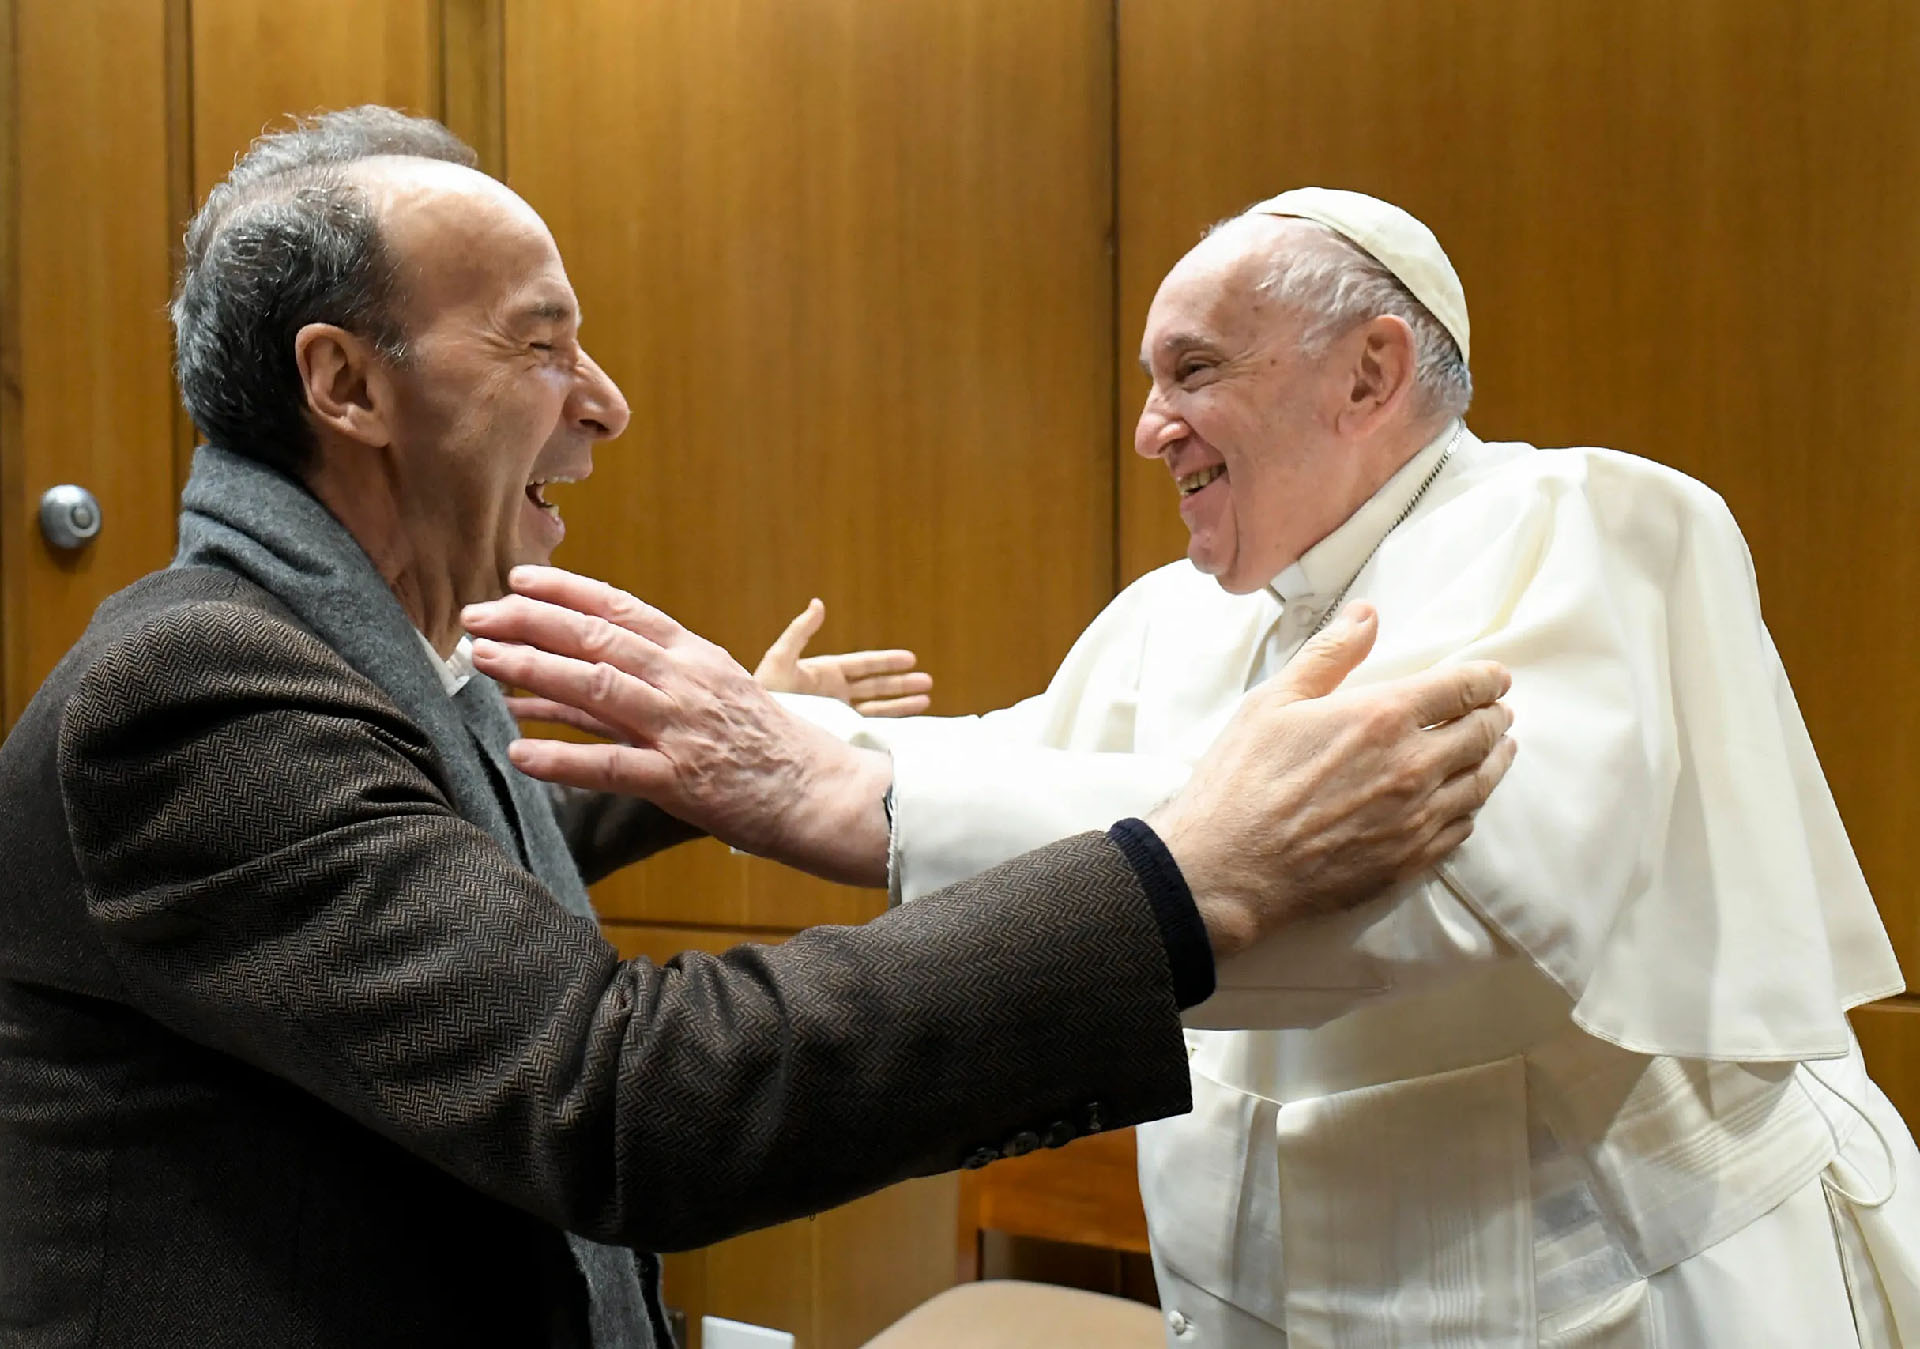 Cette rencontre a eu lieu à la veille de la diffusion d’un spectacle de l’acteur sur la figure de saint François d’Assise | © Vatican Media